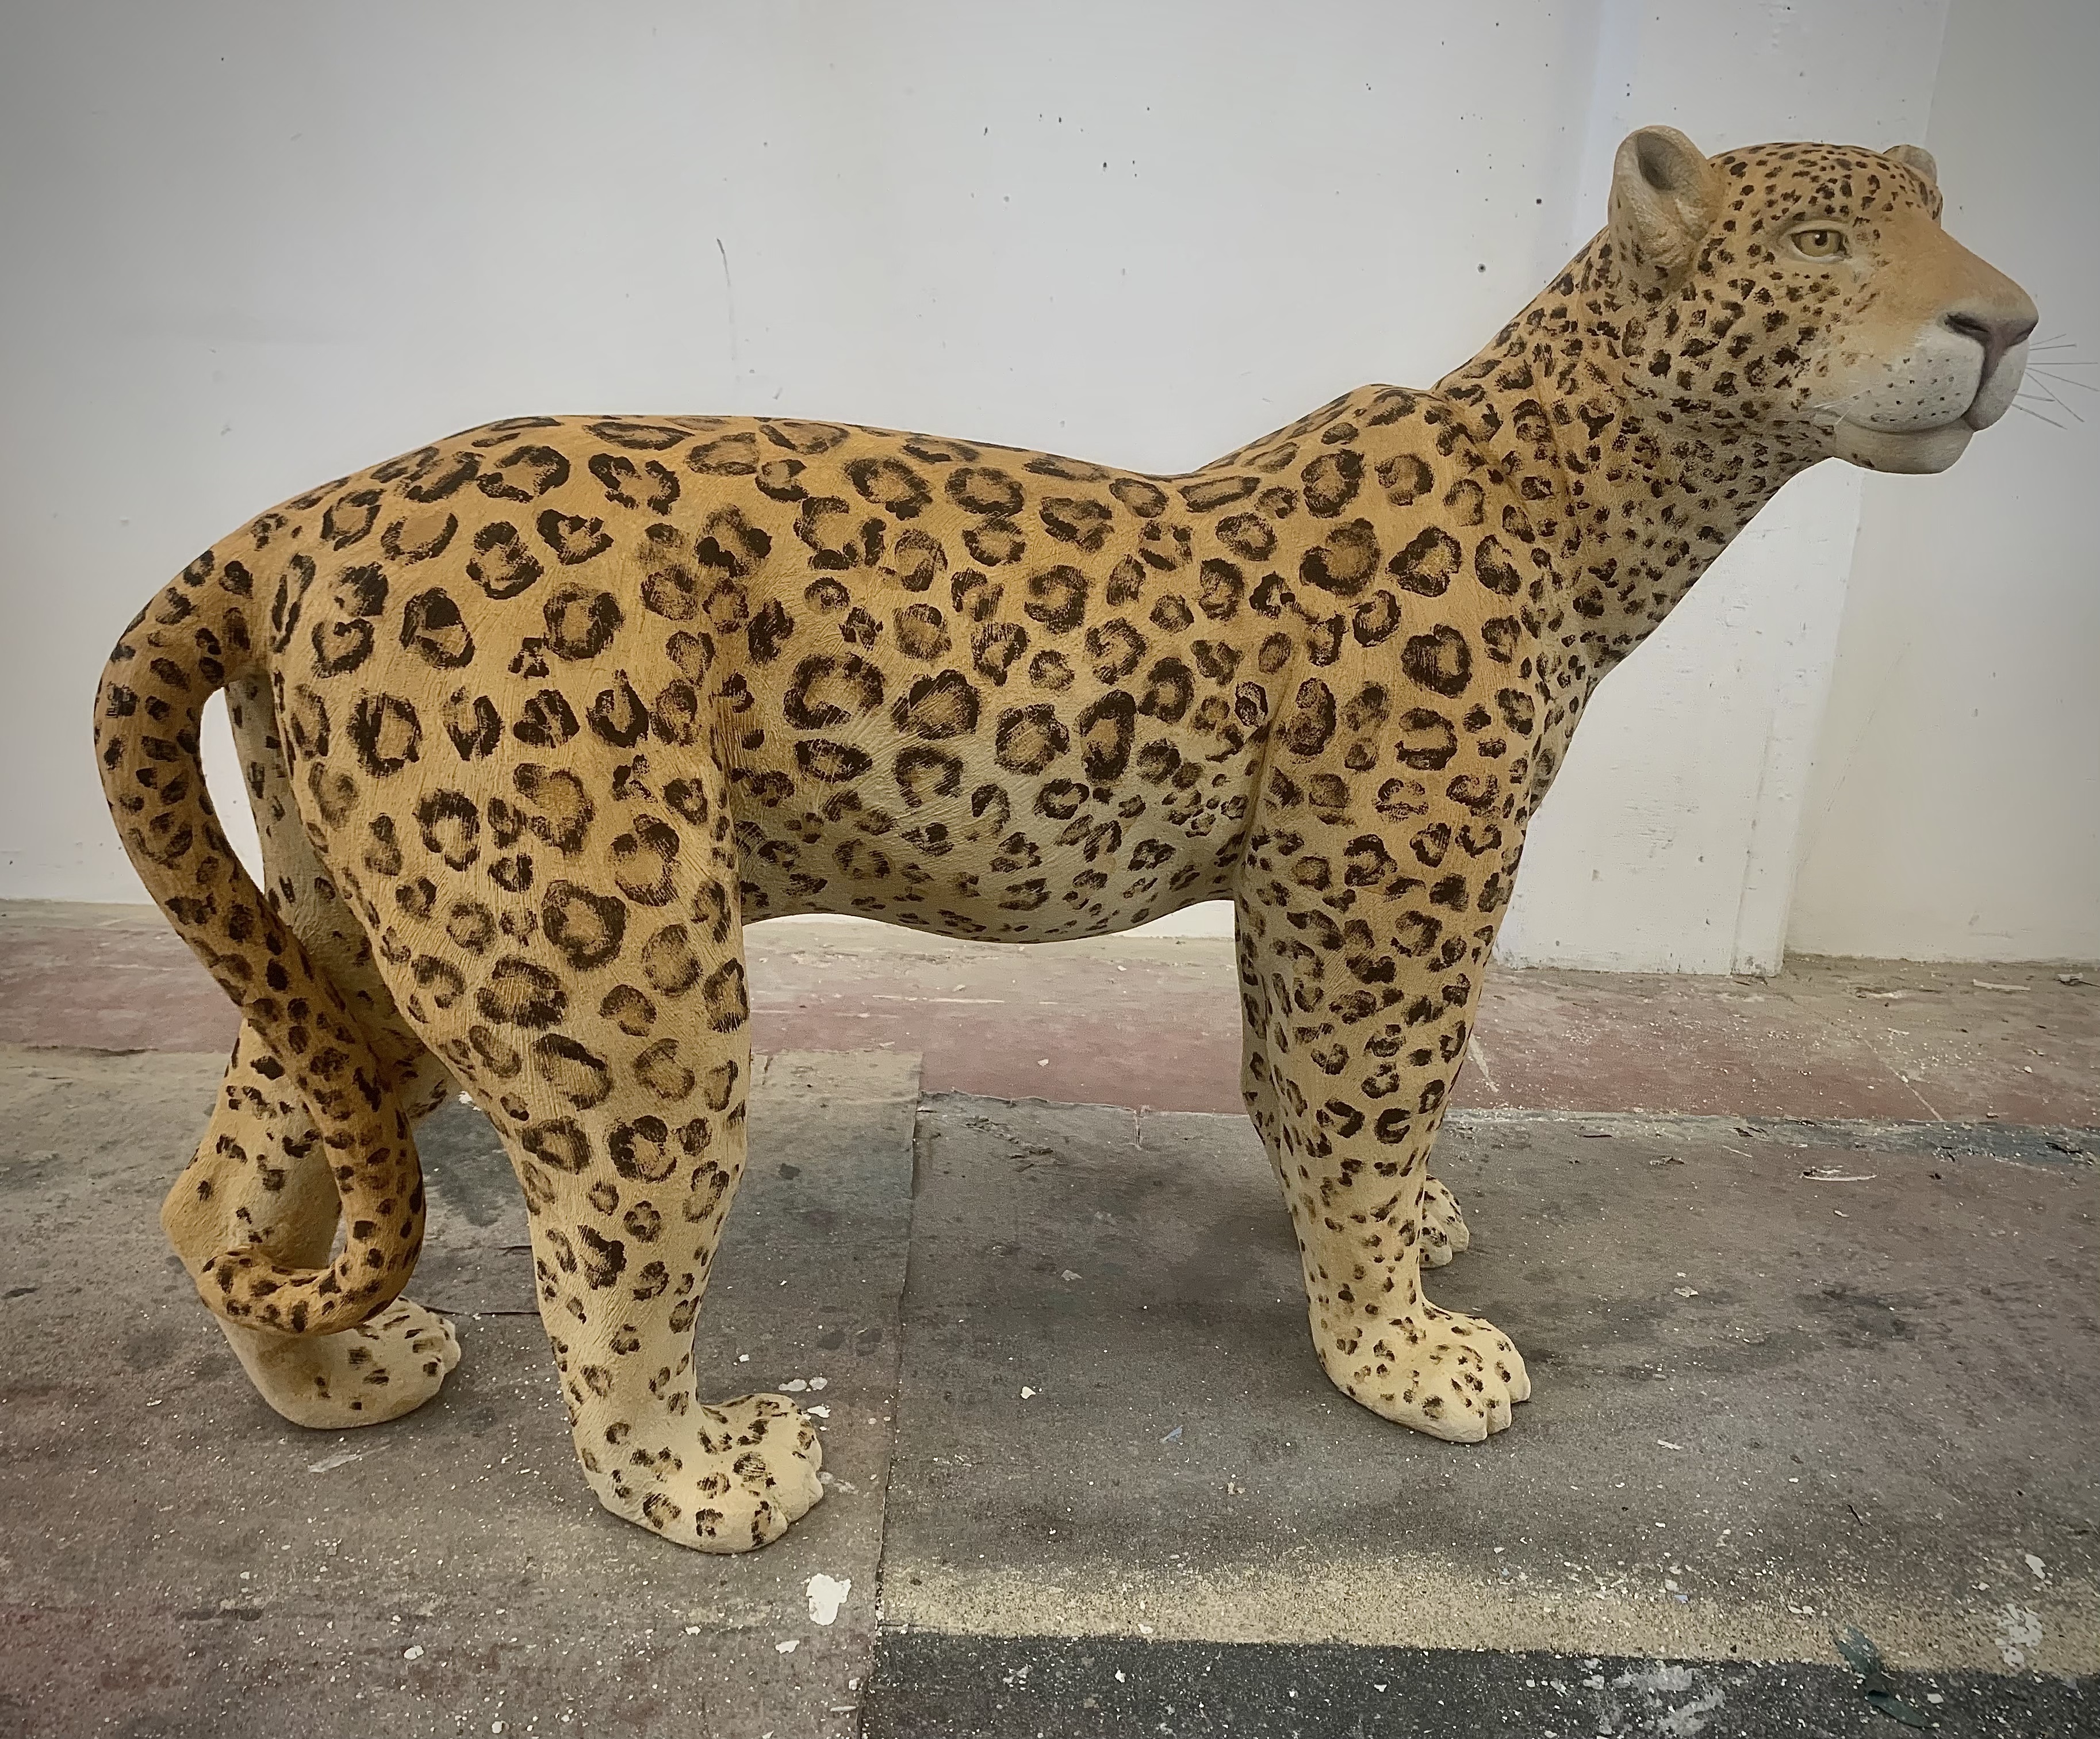 jaguar real size